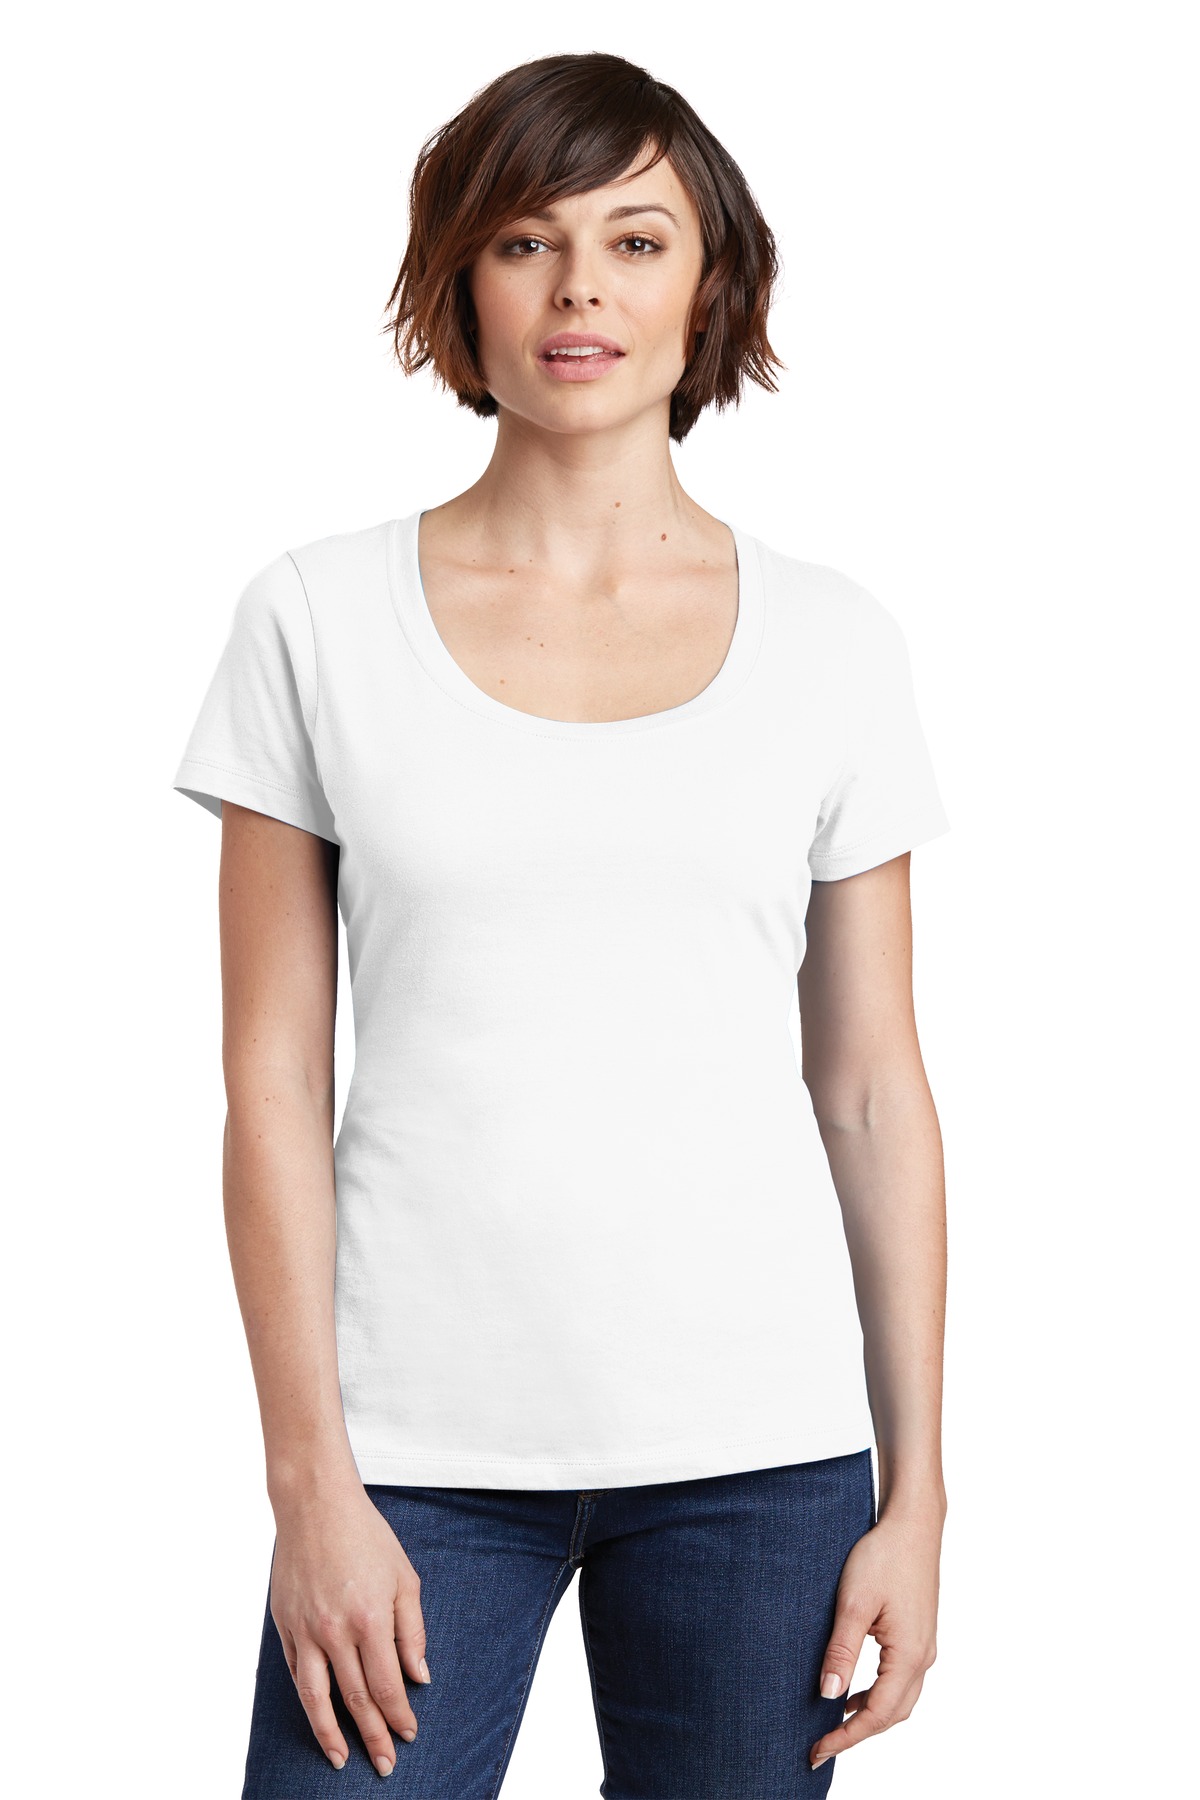 Shirt white girl. Девушка в белой футболке. T-Shirt женская. Качественная футболка женская белая. White t Shirt for women.